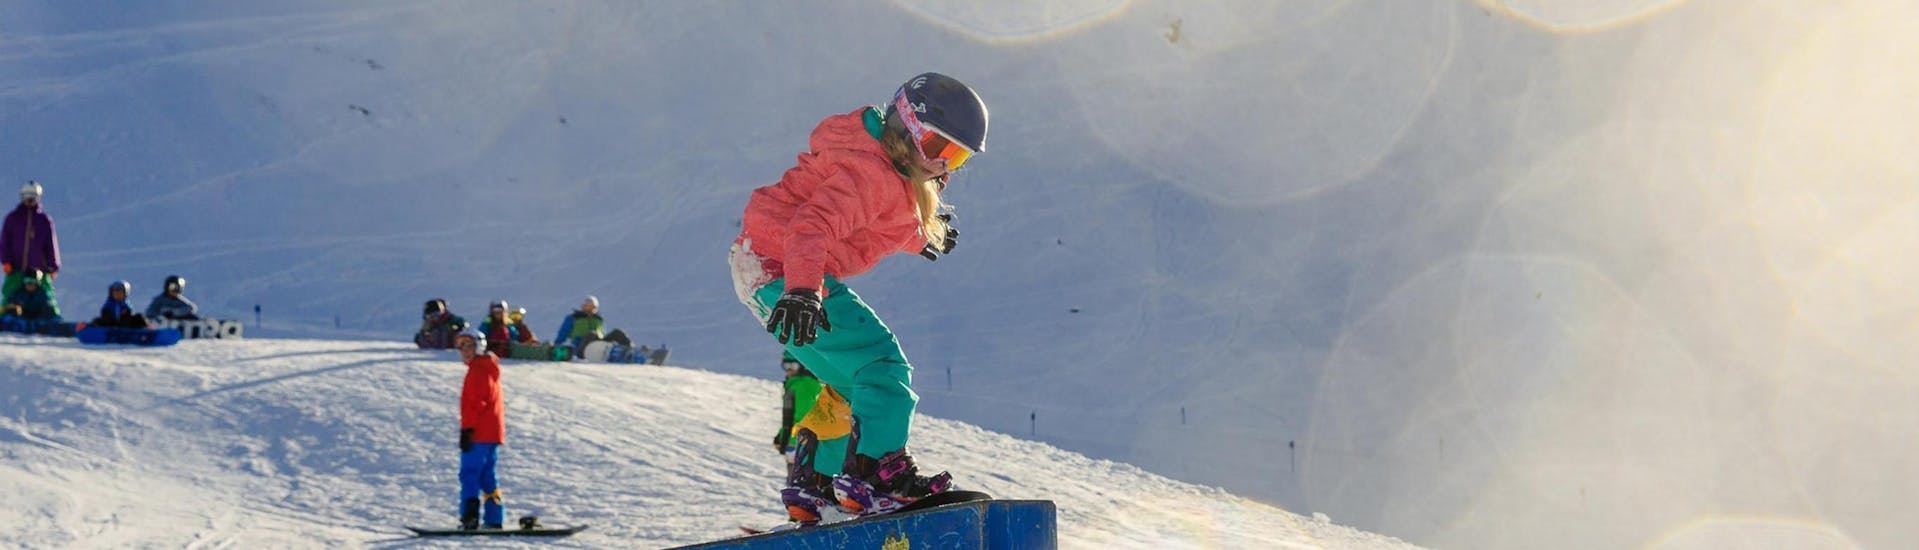 Snowboardkurs für Kinder (ab 7 J.) aller Levels mit Skischule ESKIMOS Saas-Fee.